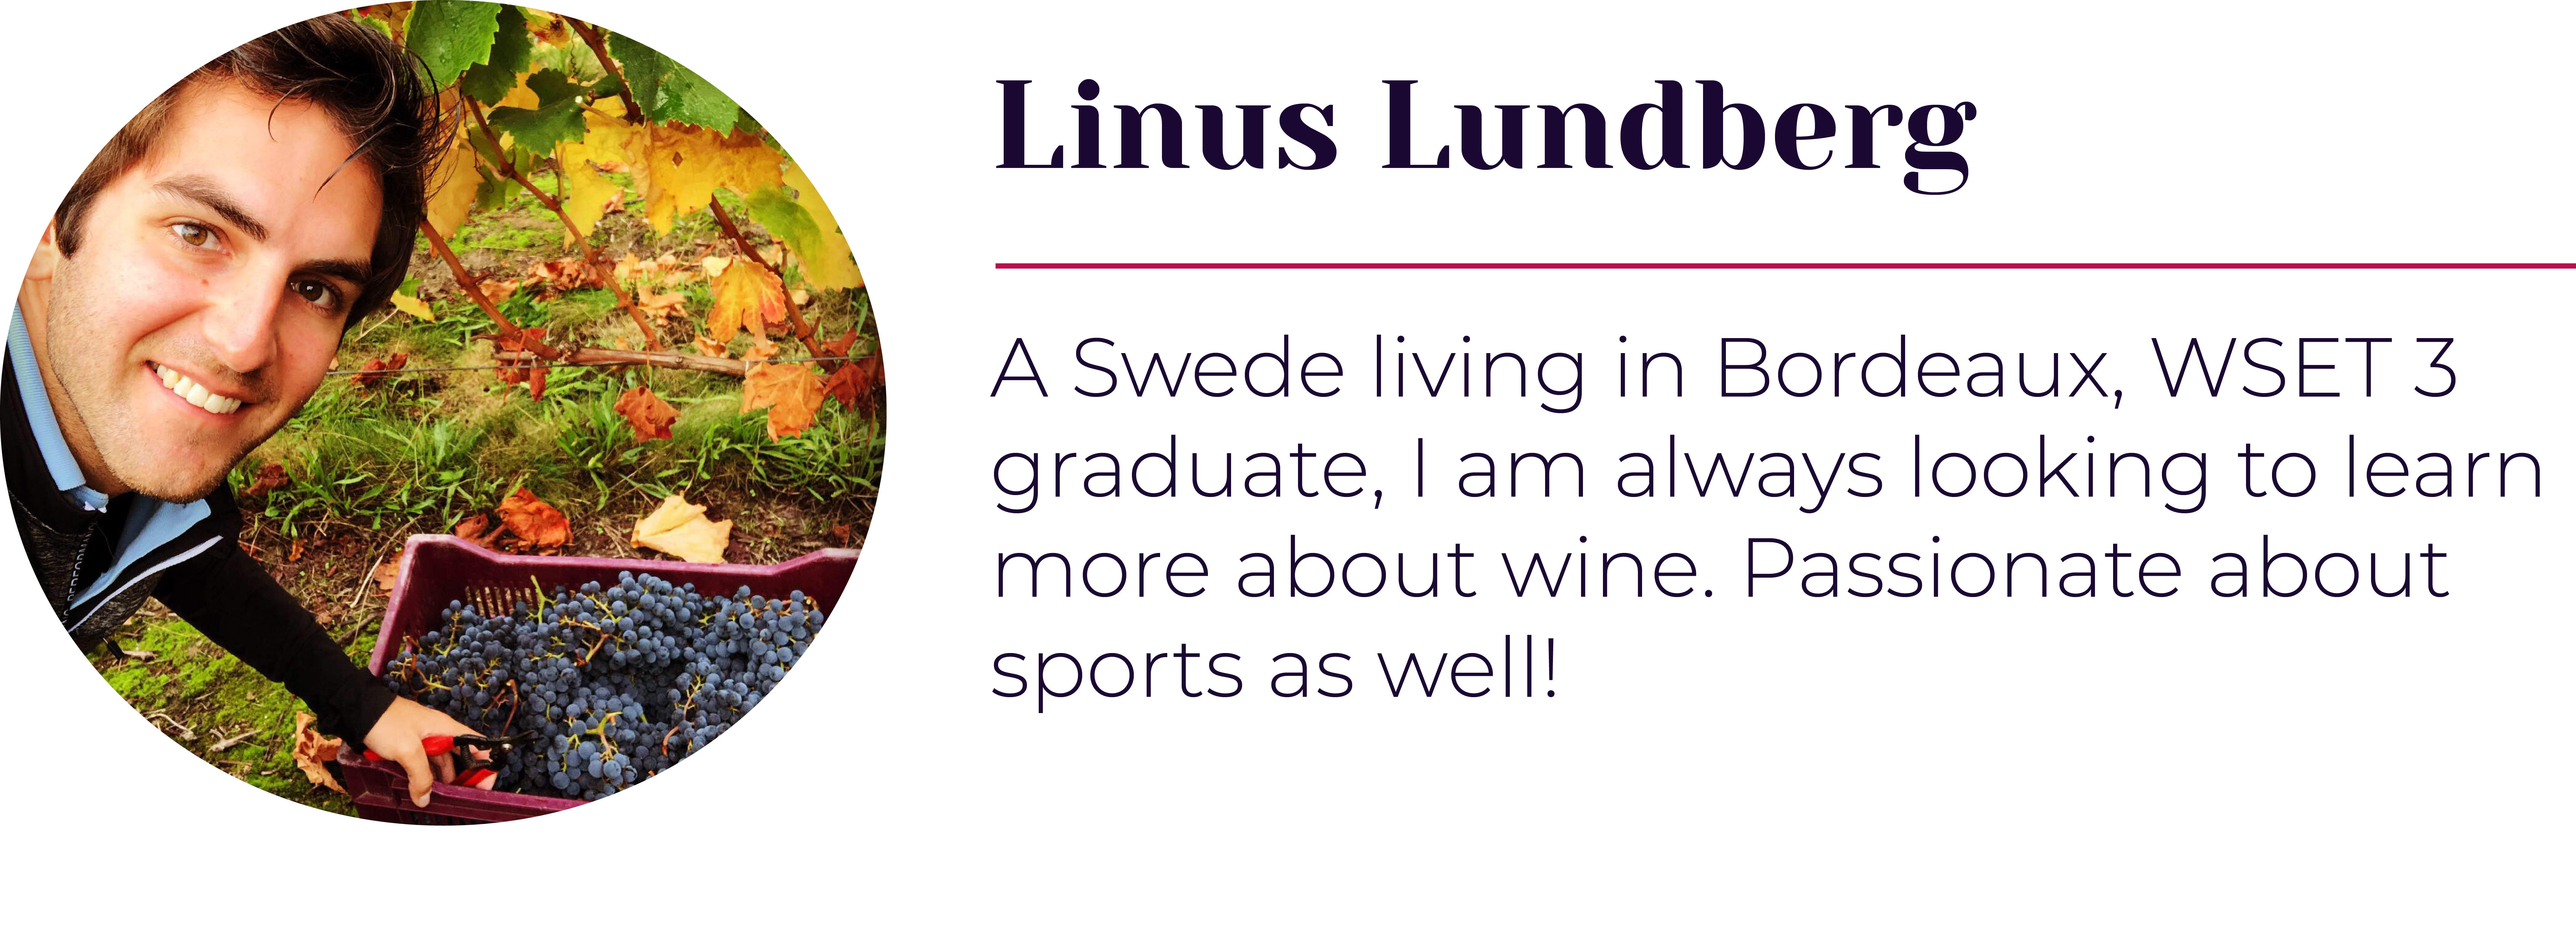 Linus Lundberg signature